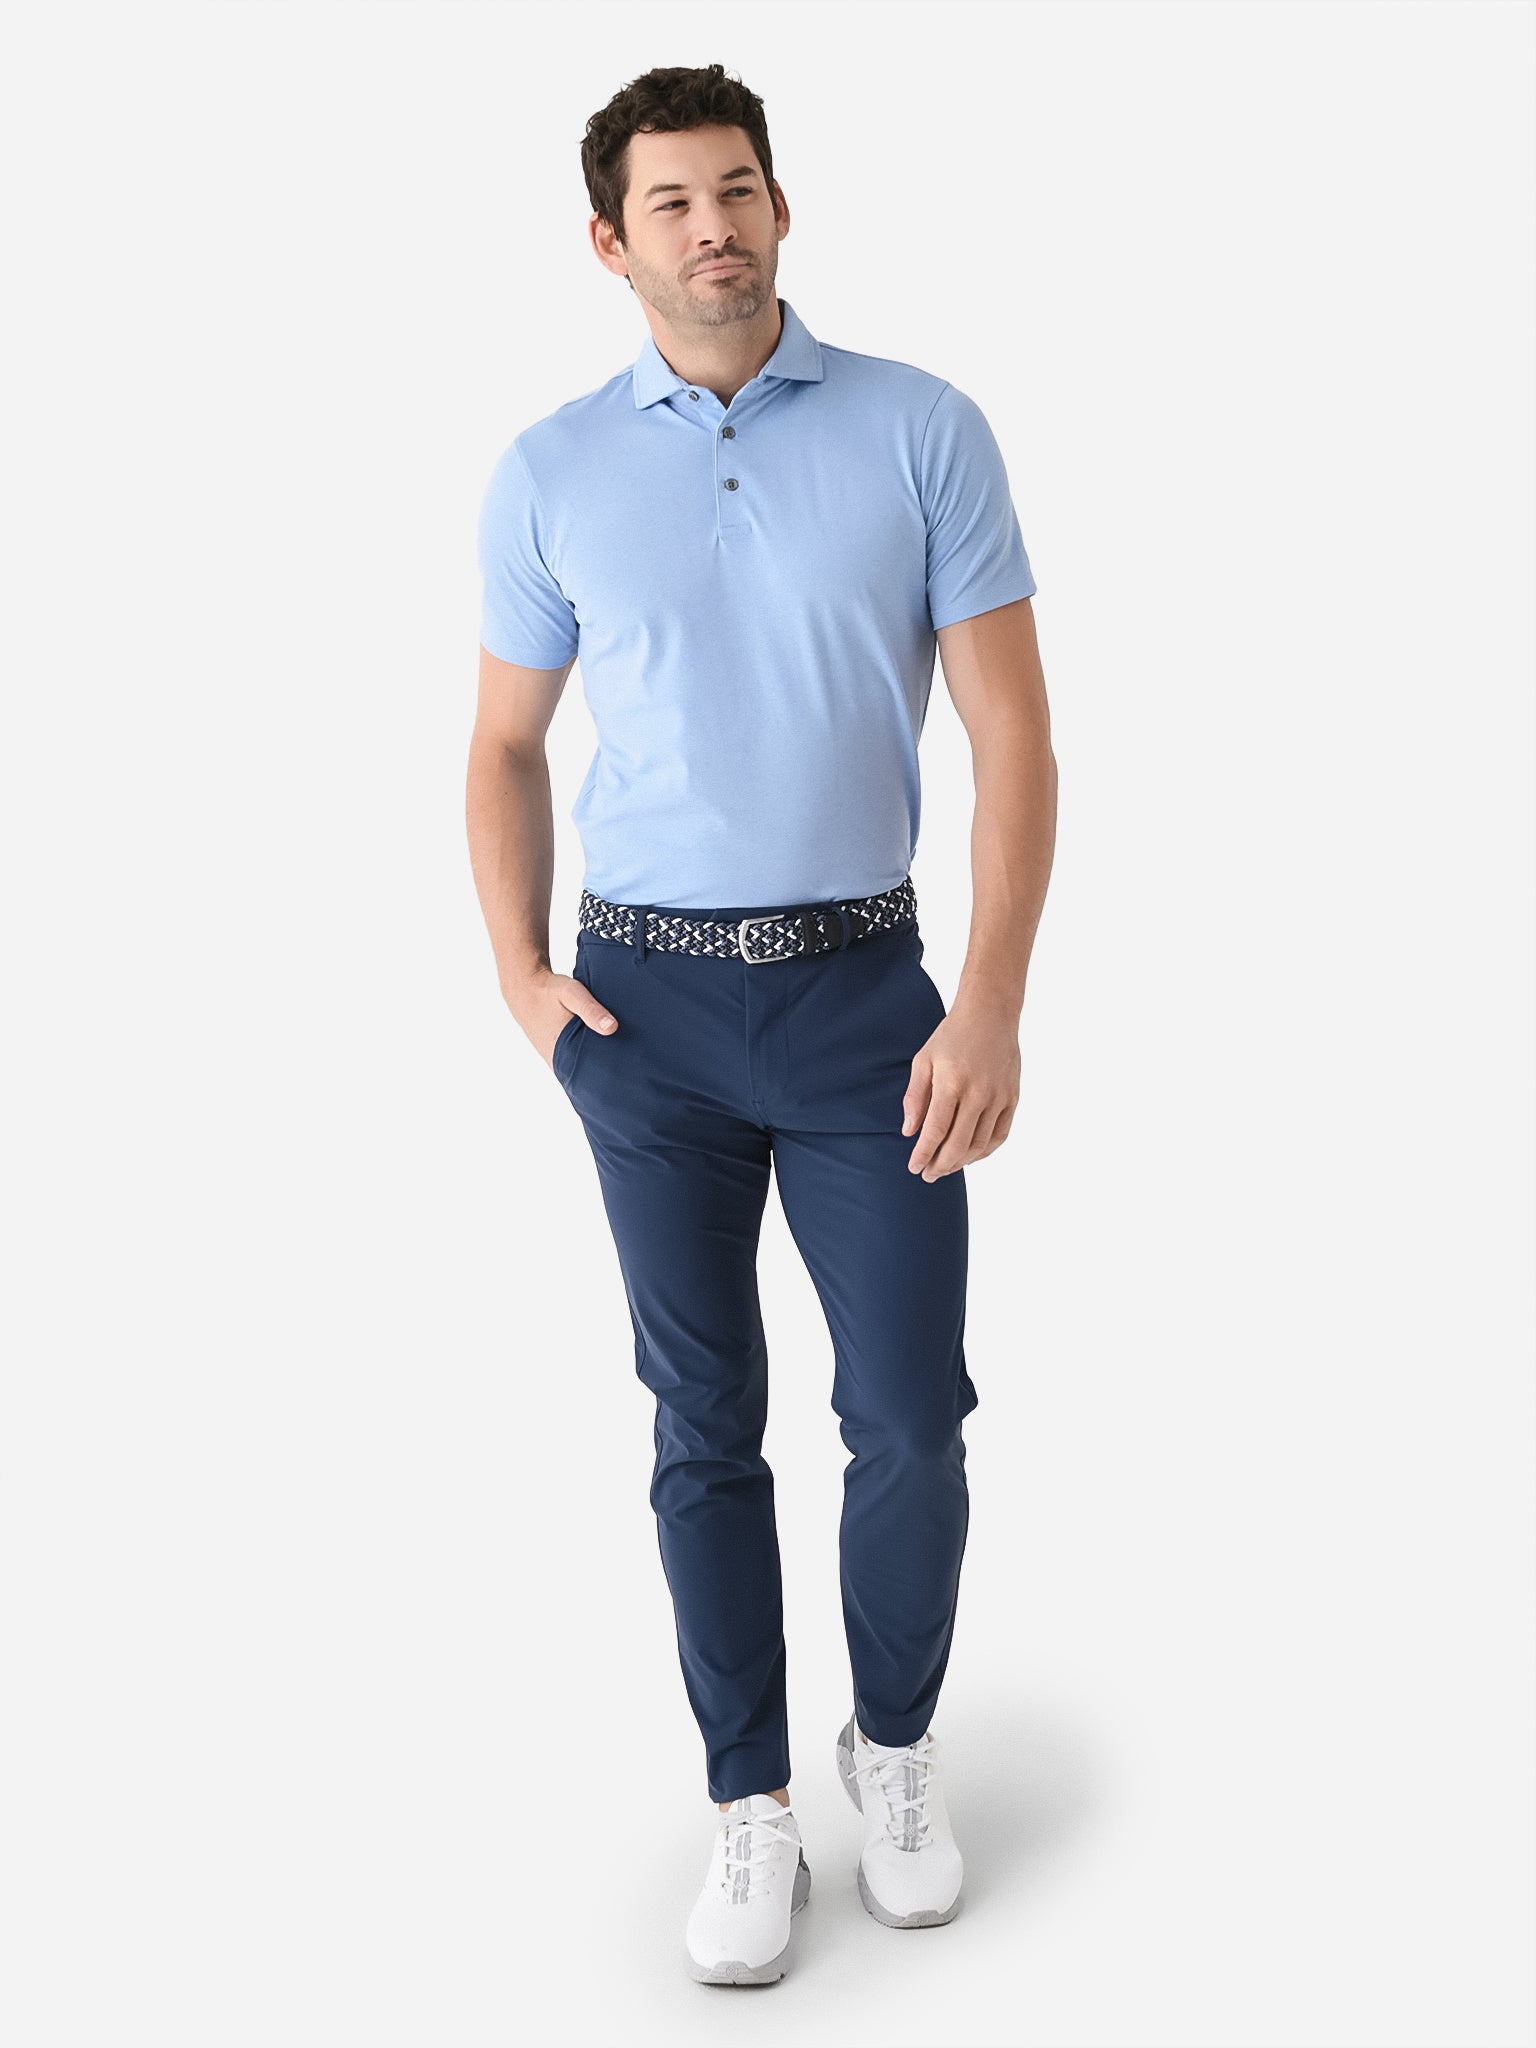 Men's Pants: Montauk Trouser - Greyson Clothiers